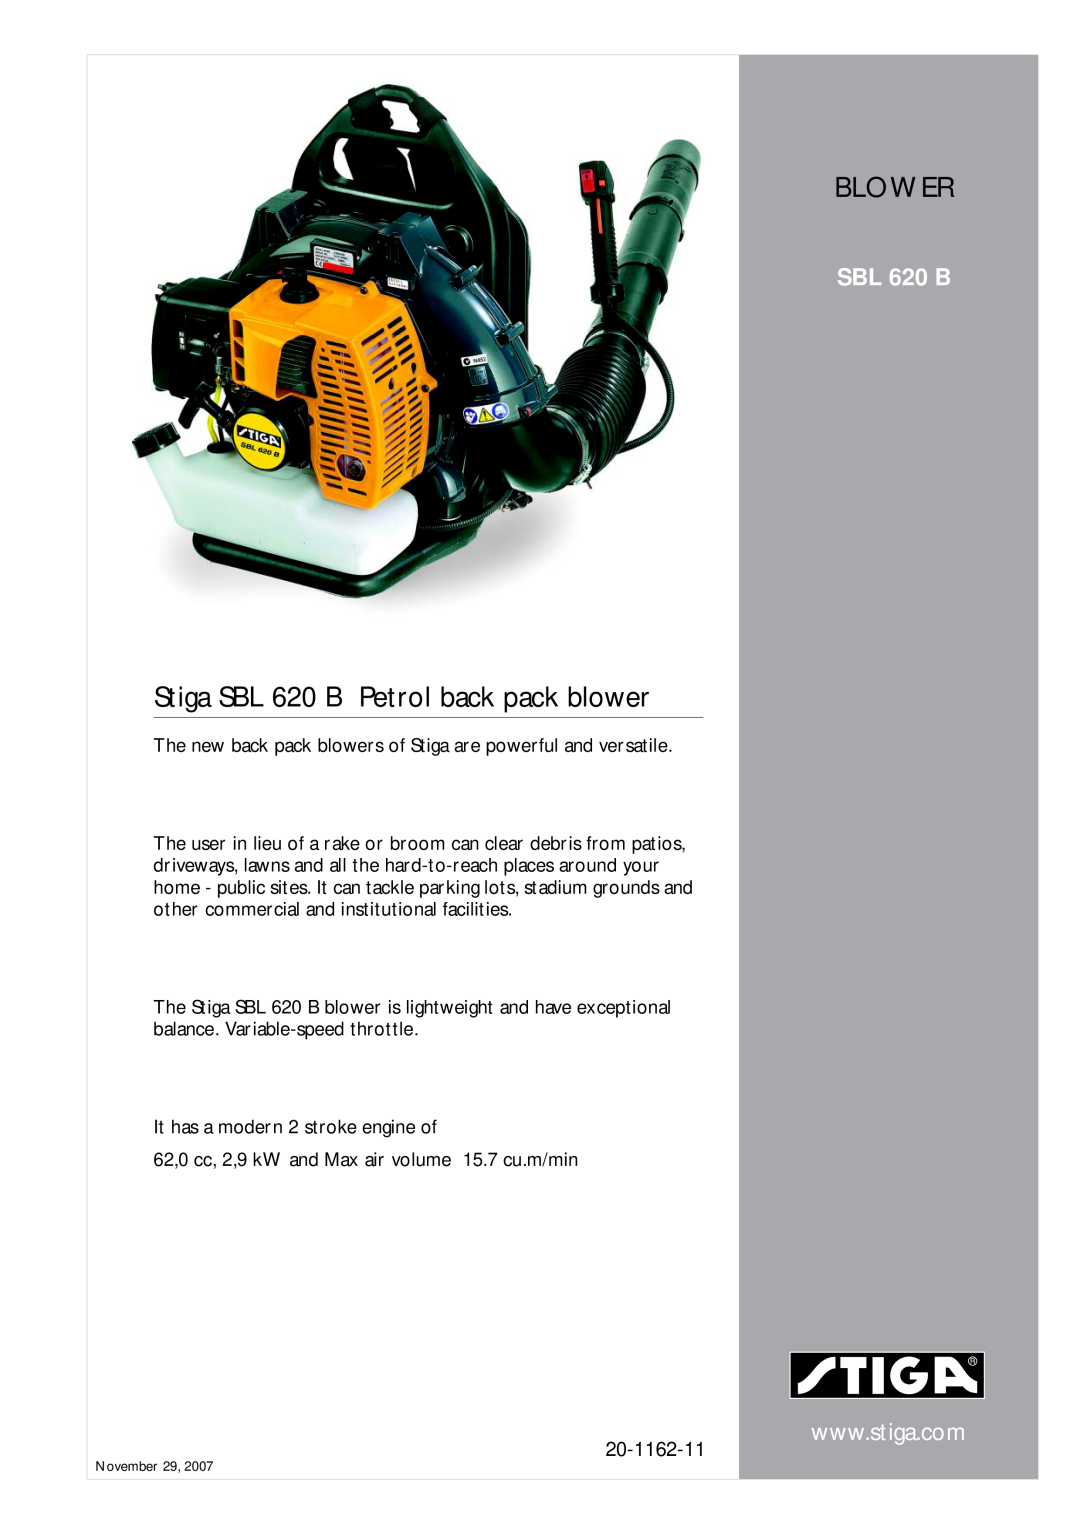 Stiga manual Blower, Stiga SBL 620 B Petrol back pack blower, 20-1162-11 